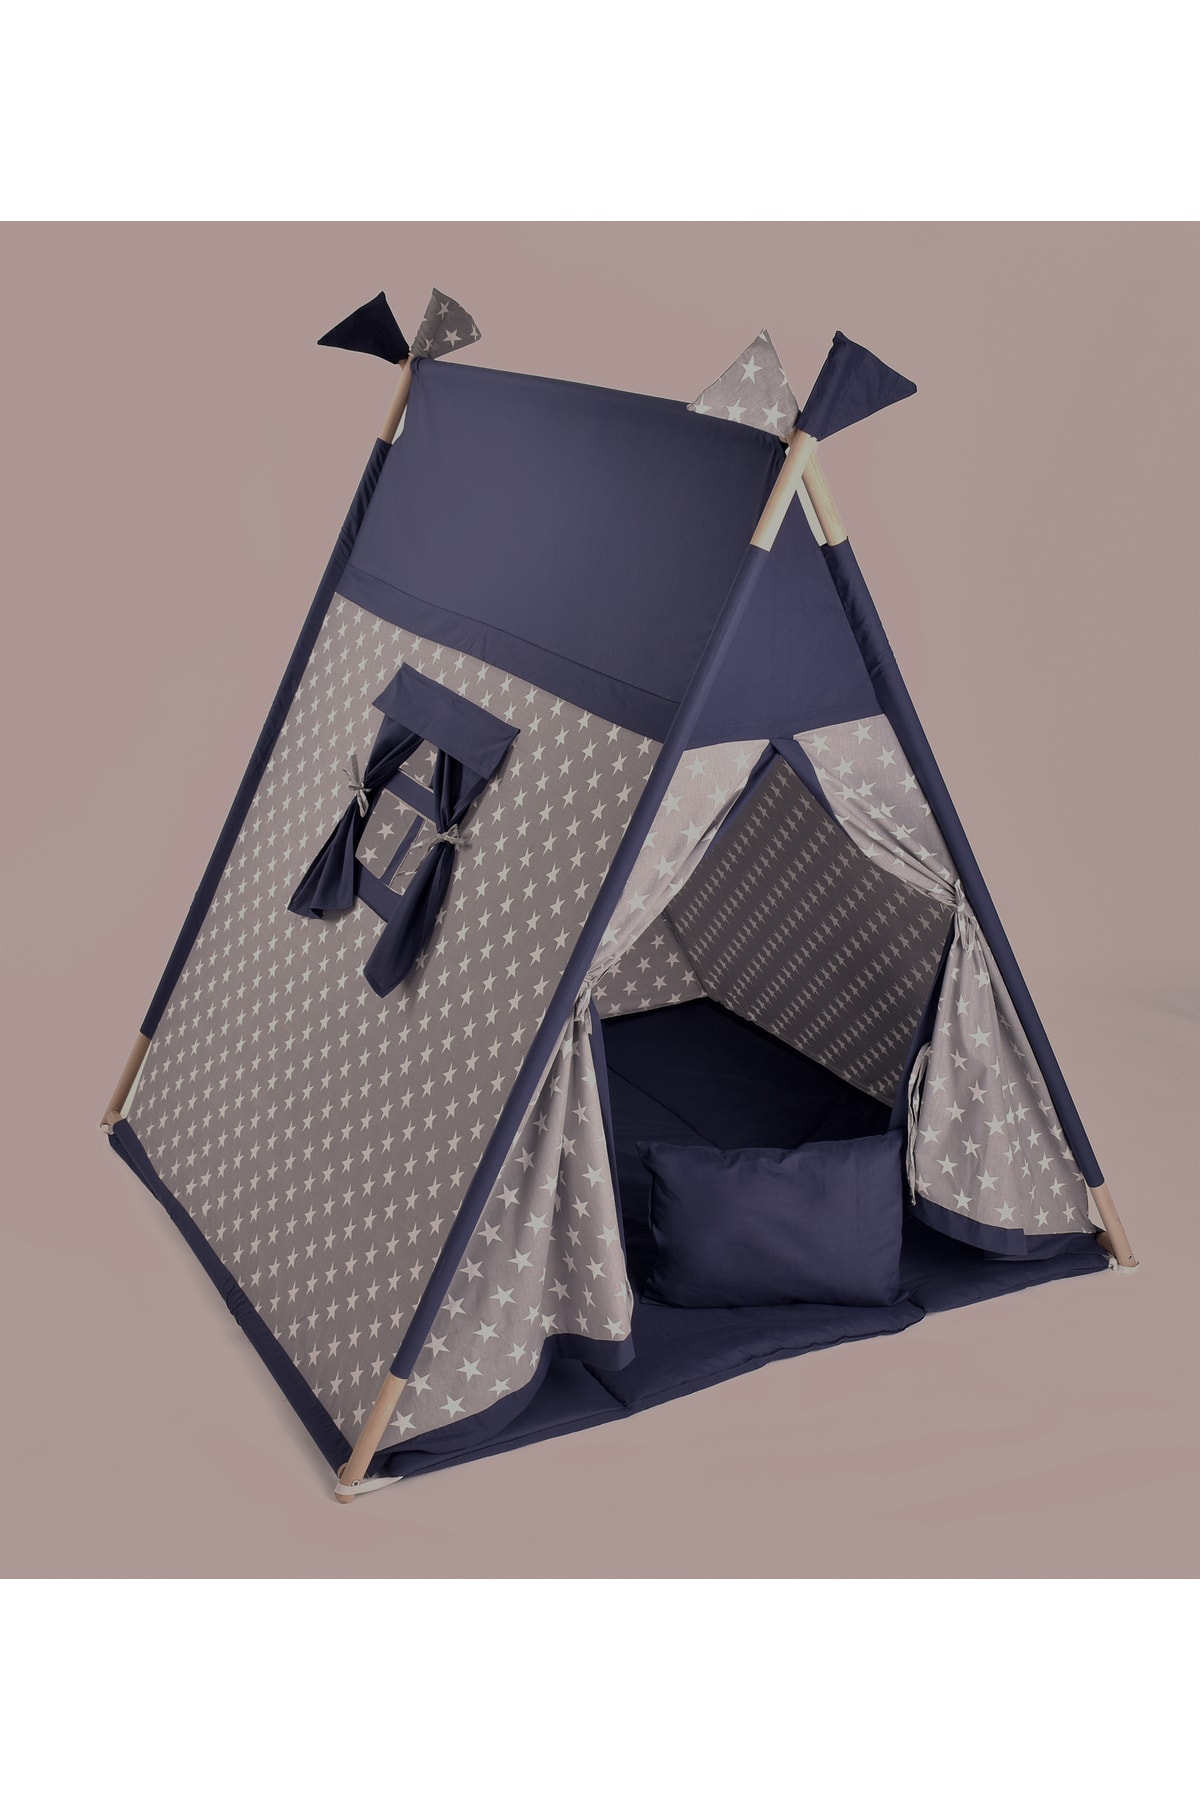 Altev Pirizmatik Ahşap Çoçuk Çadırı Kızılderili Çadırı Oyun Evi Oyun Çadırı Kamp Çadırı Minderli